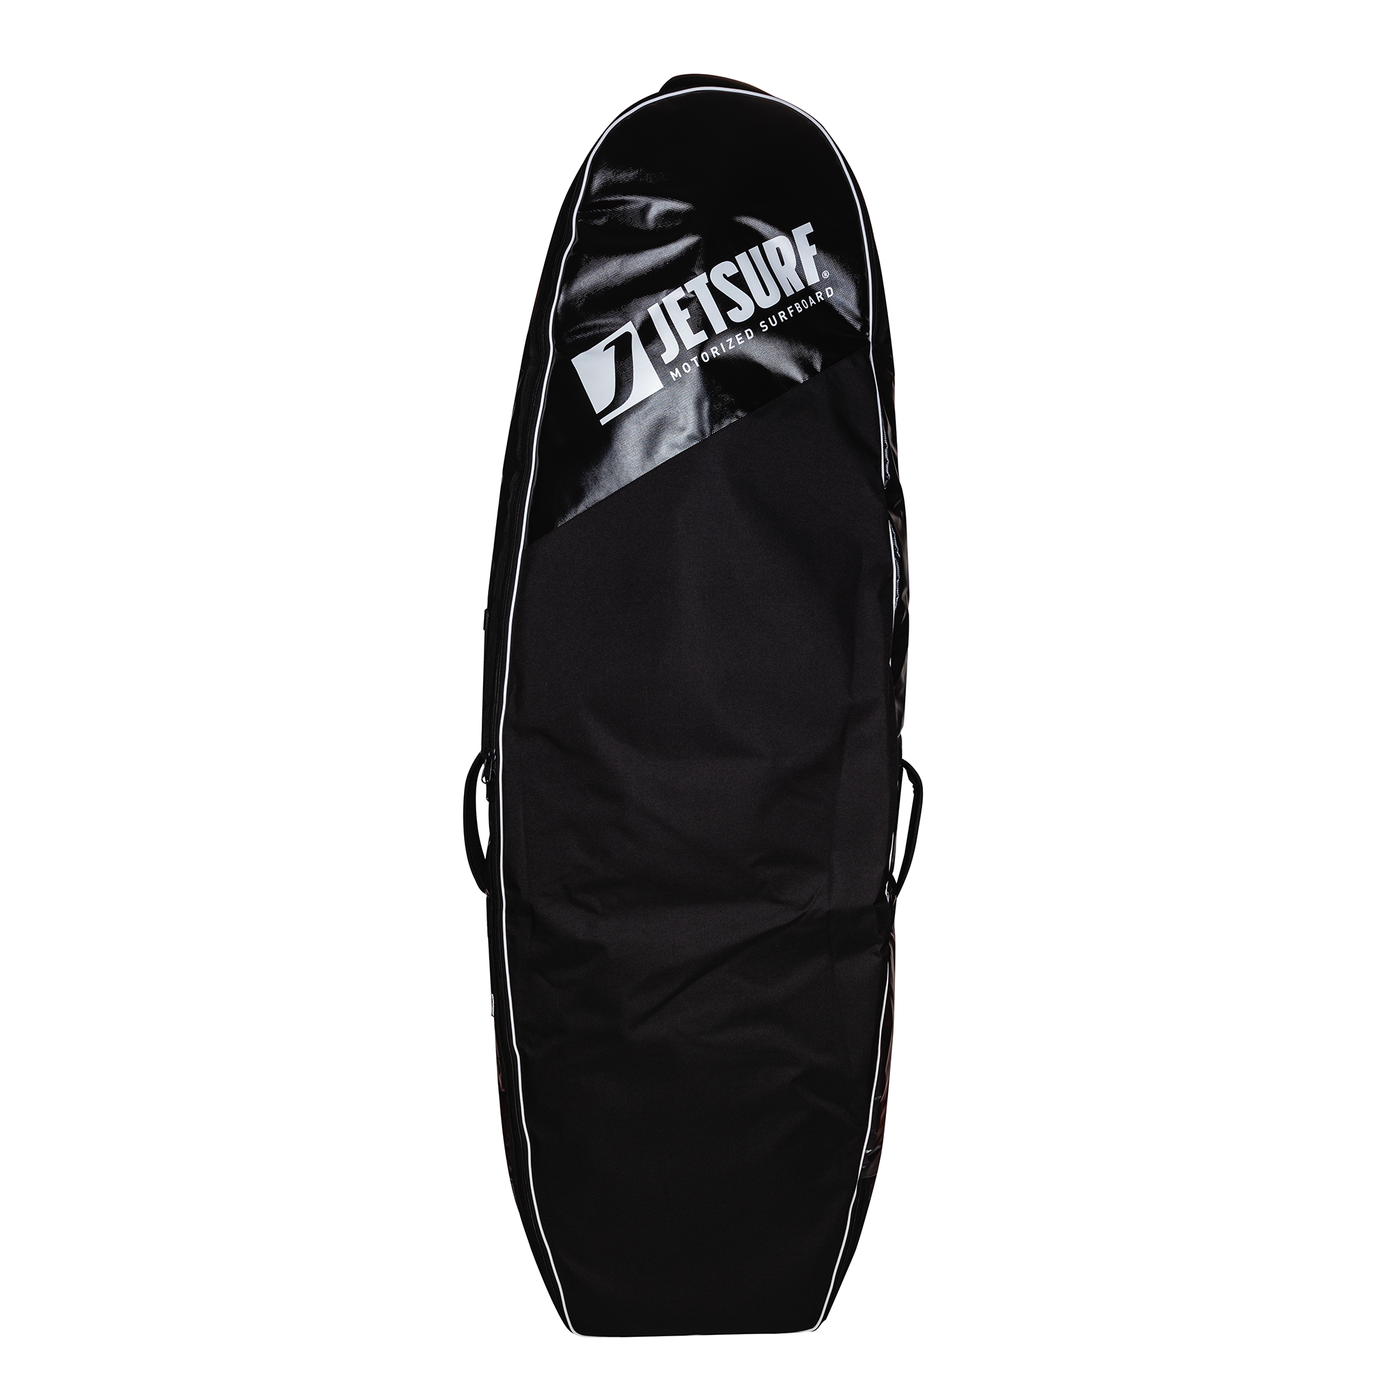 Standardowa torba/ pokrowiec na deskę surfingowa z silnikiem spalinowym lub elektrycznym Jetsurf